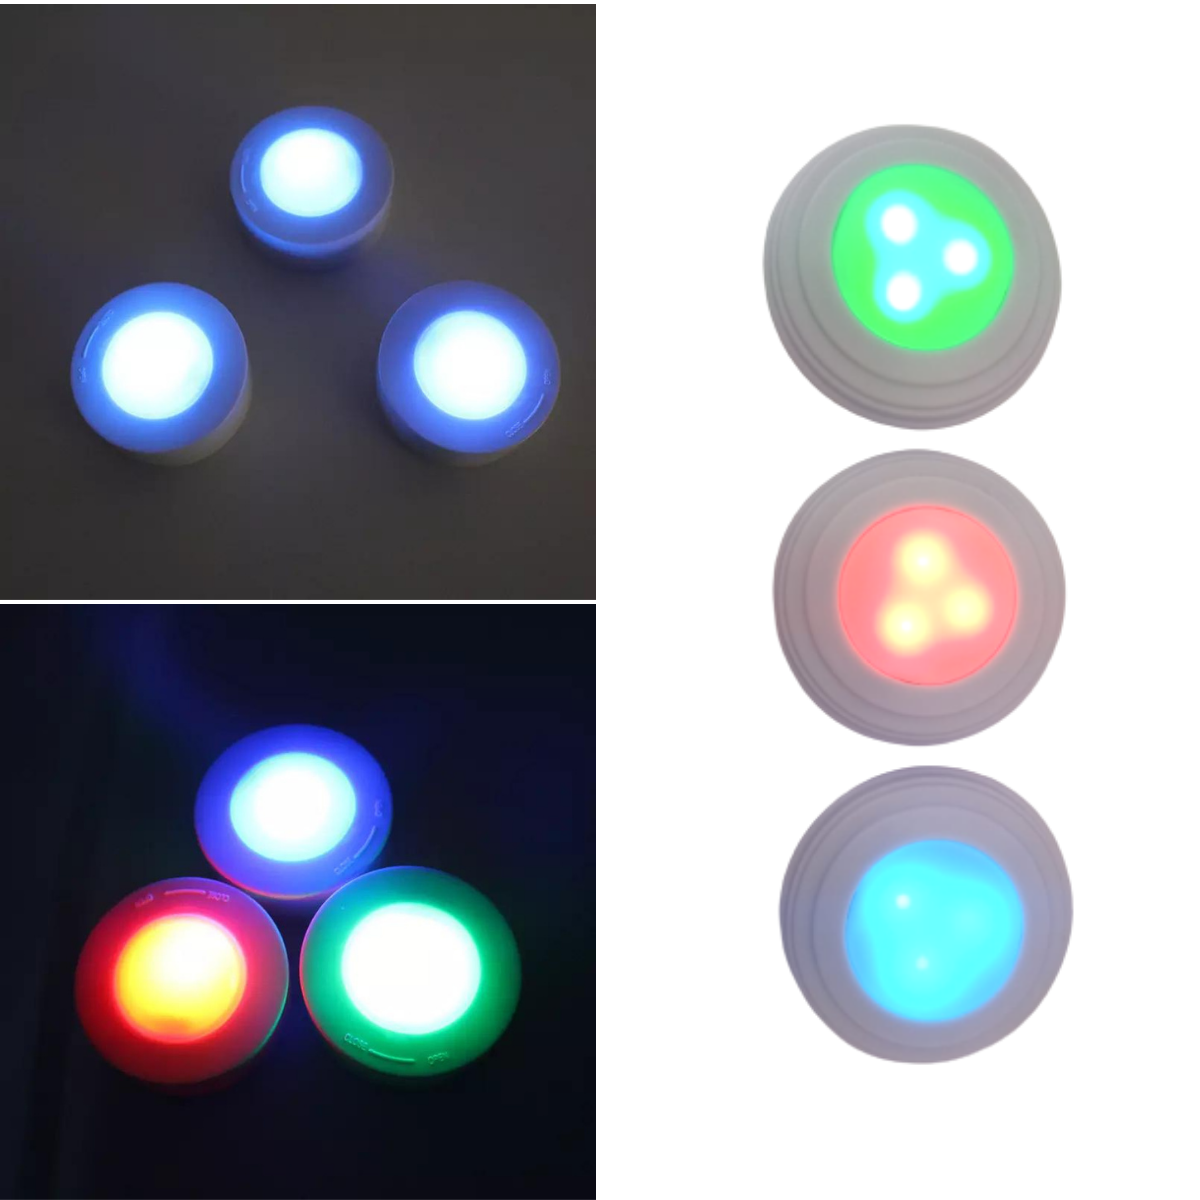 Kit 3 Luminárias Lâmpadas RGB Coloridas Multicolor Led Spots Sem Fio Com Controle Remoto Com Adesivo - 6